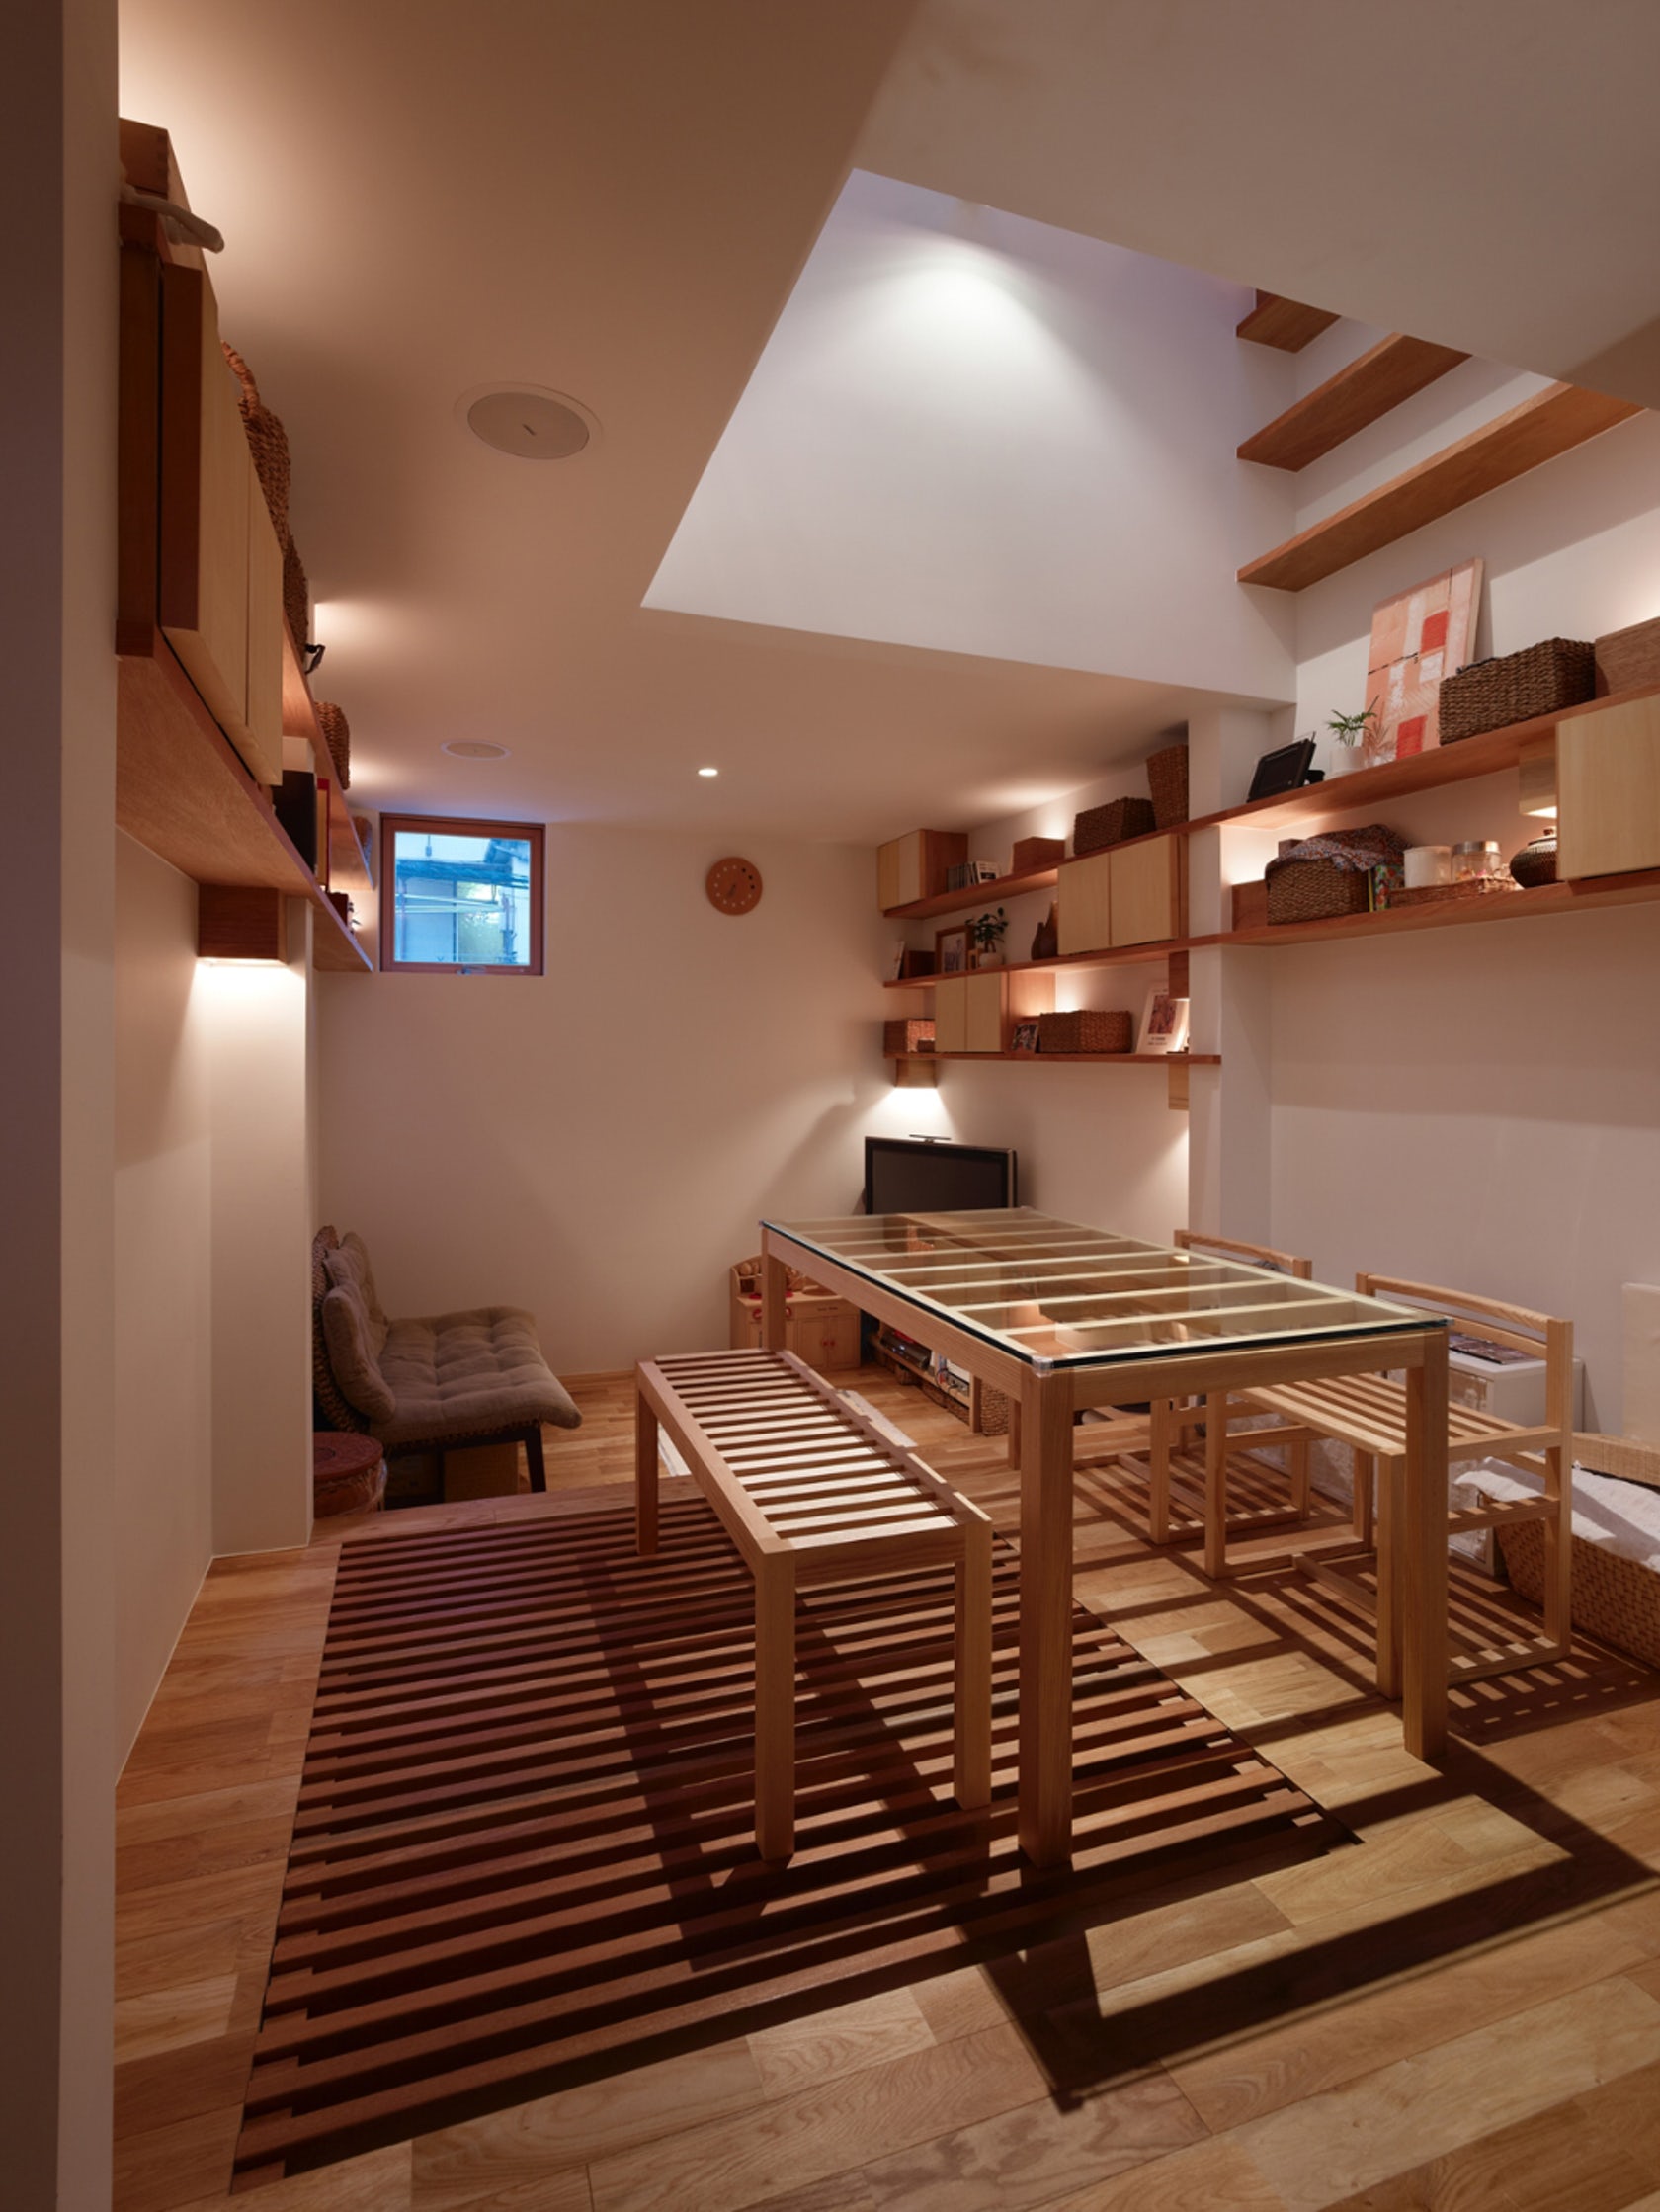 Desain Rumah Kecil Dengan Lebar Hanya 4 Meter Karya Arsitek Jepang